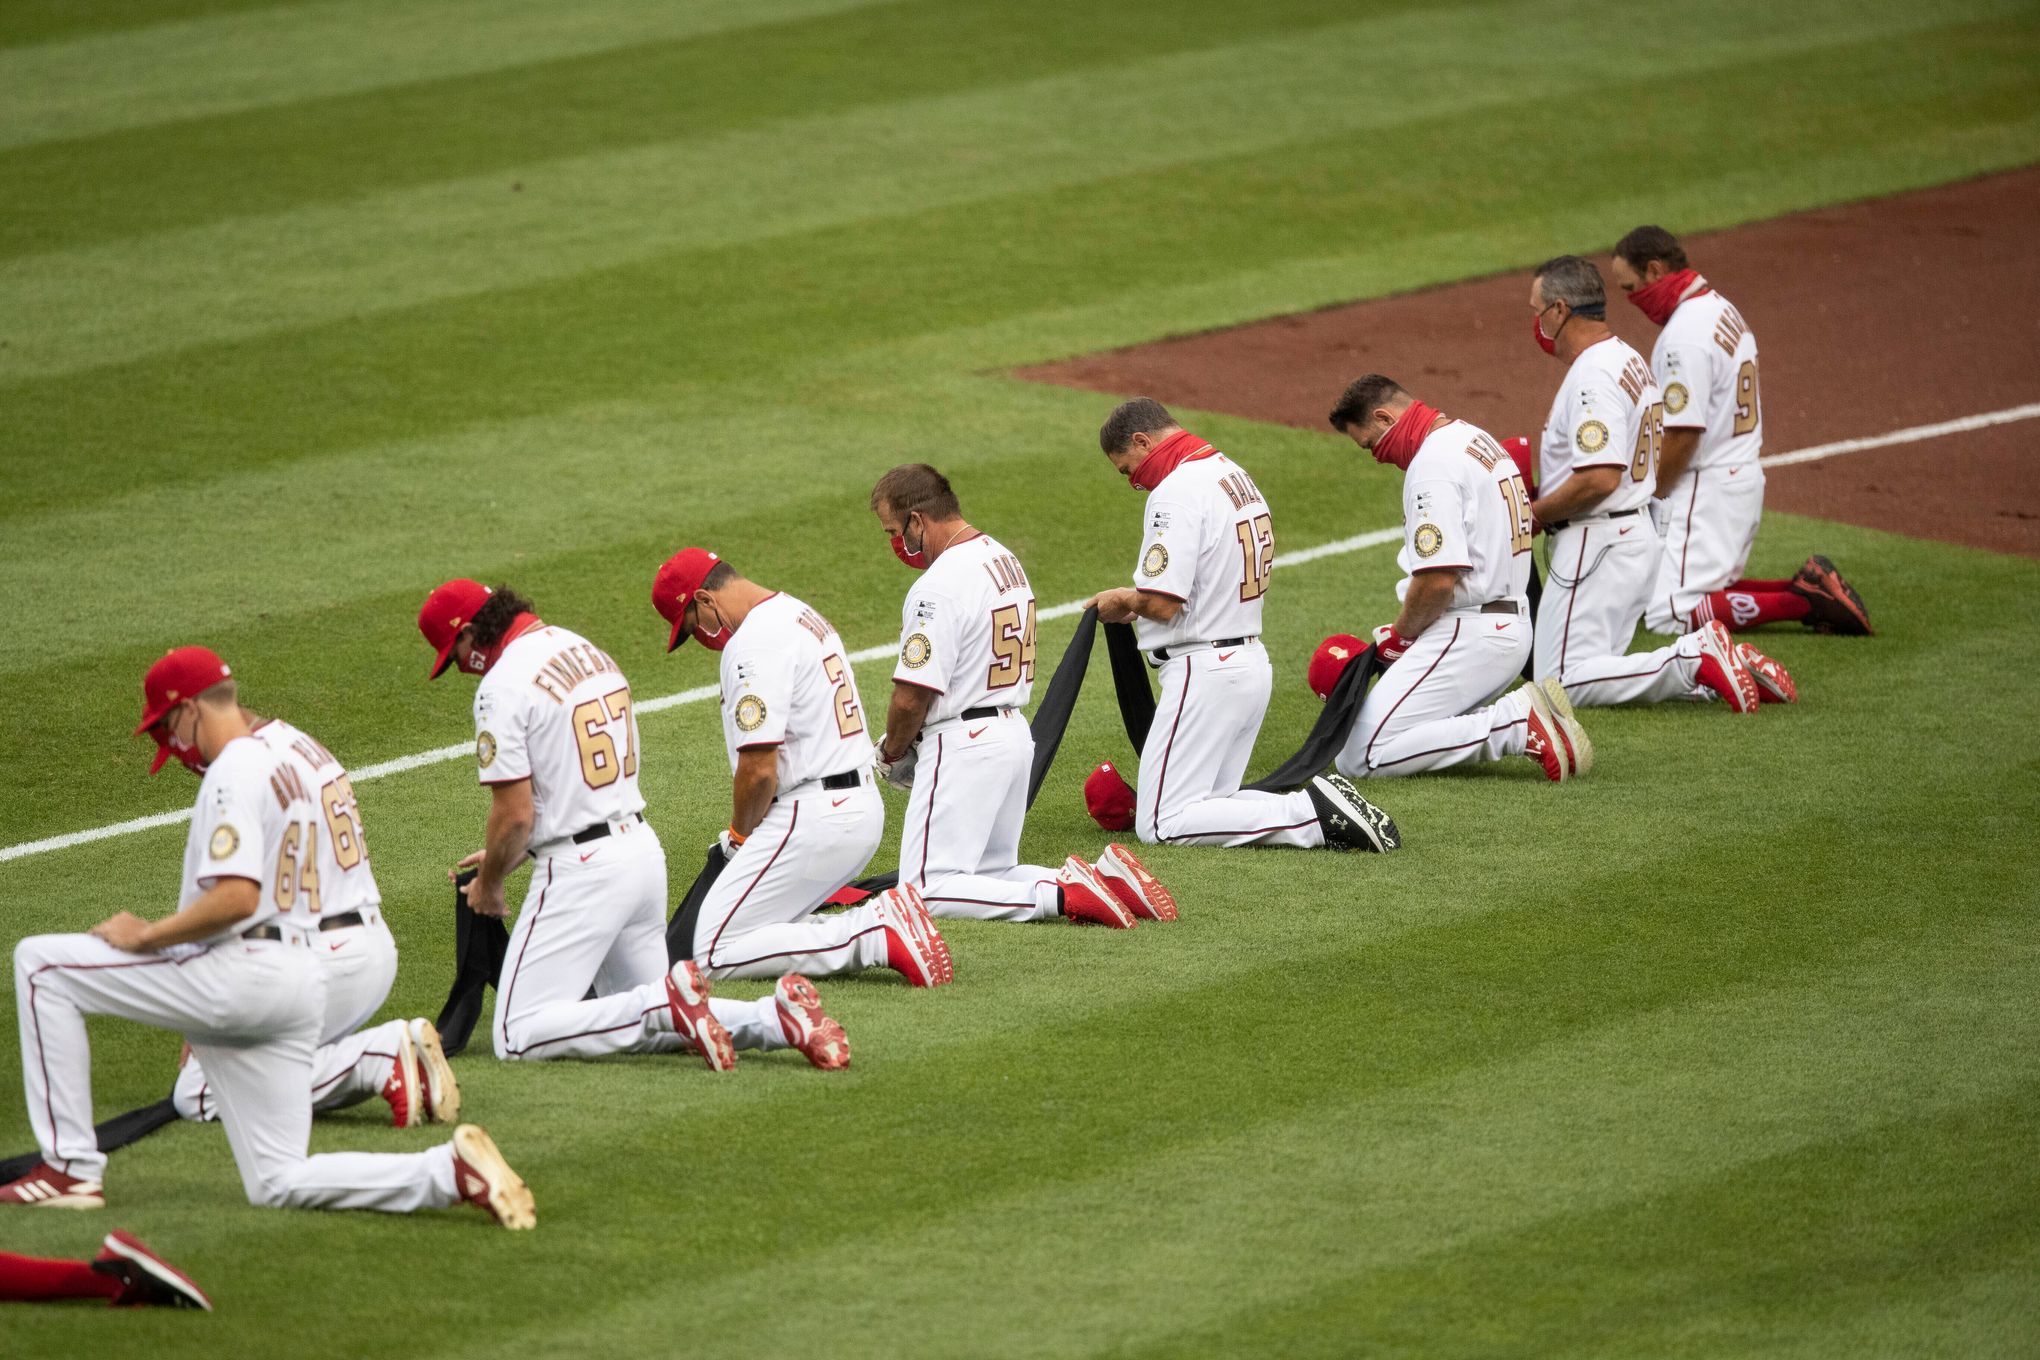 MLB teams kneel to back Black Lives Matter; Fauci's toss off